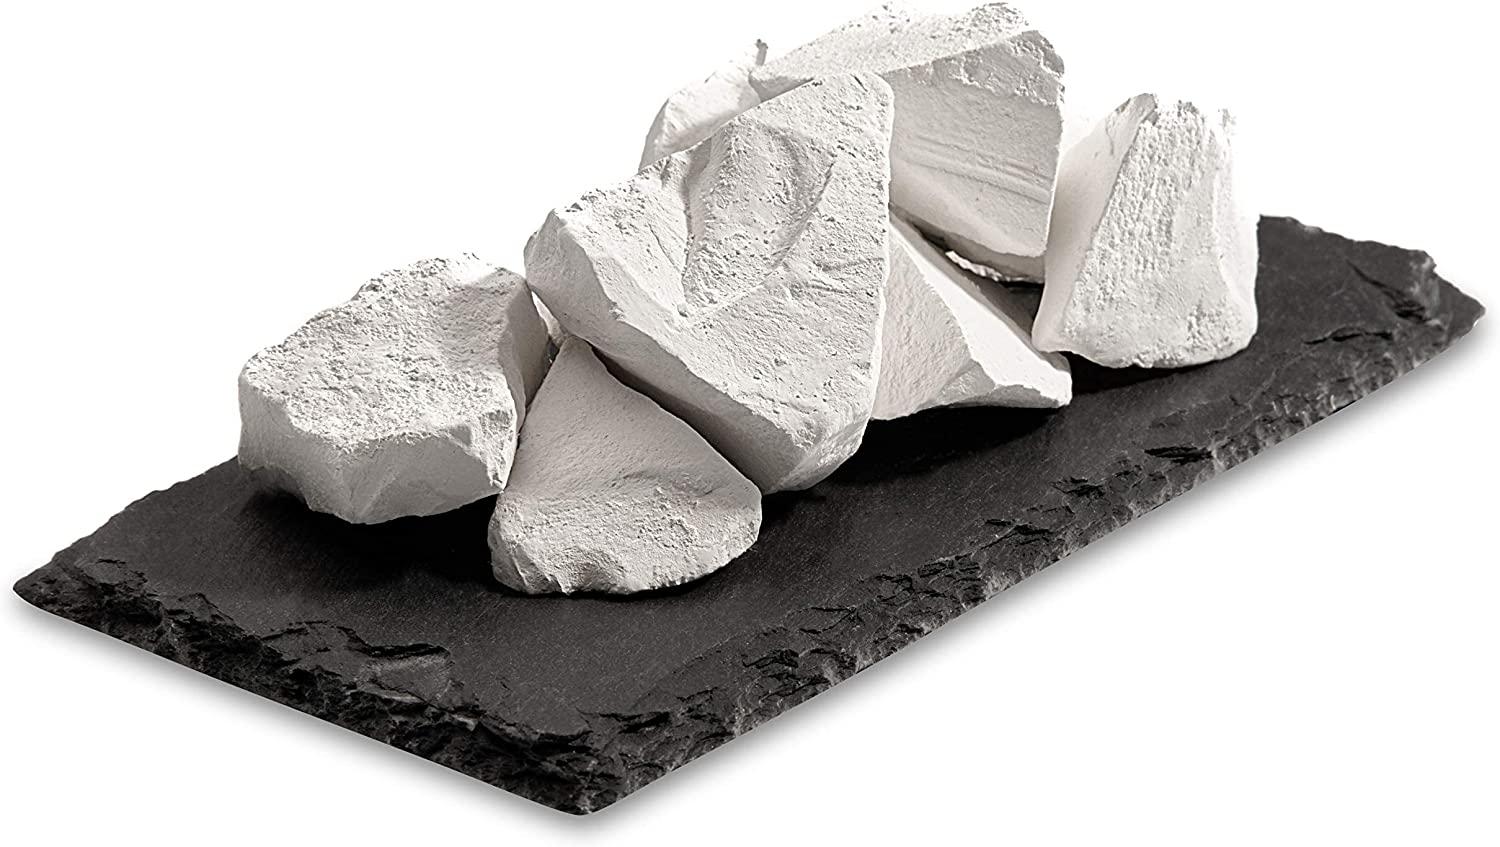 Edible chalk : MONASTIC edible Chalk chunks (lump) natural for eating (food)